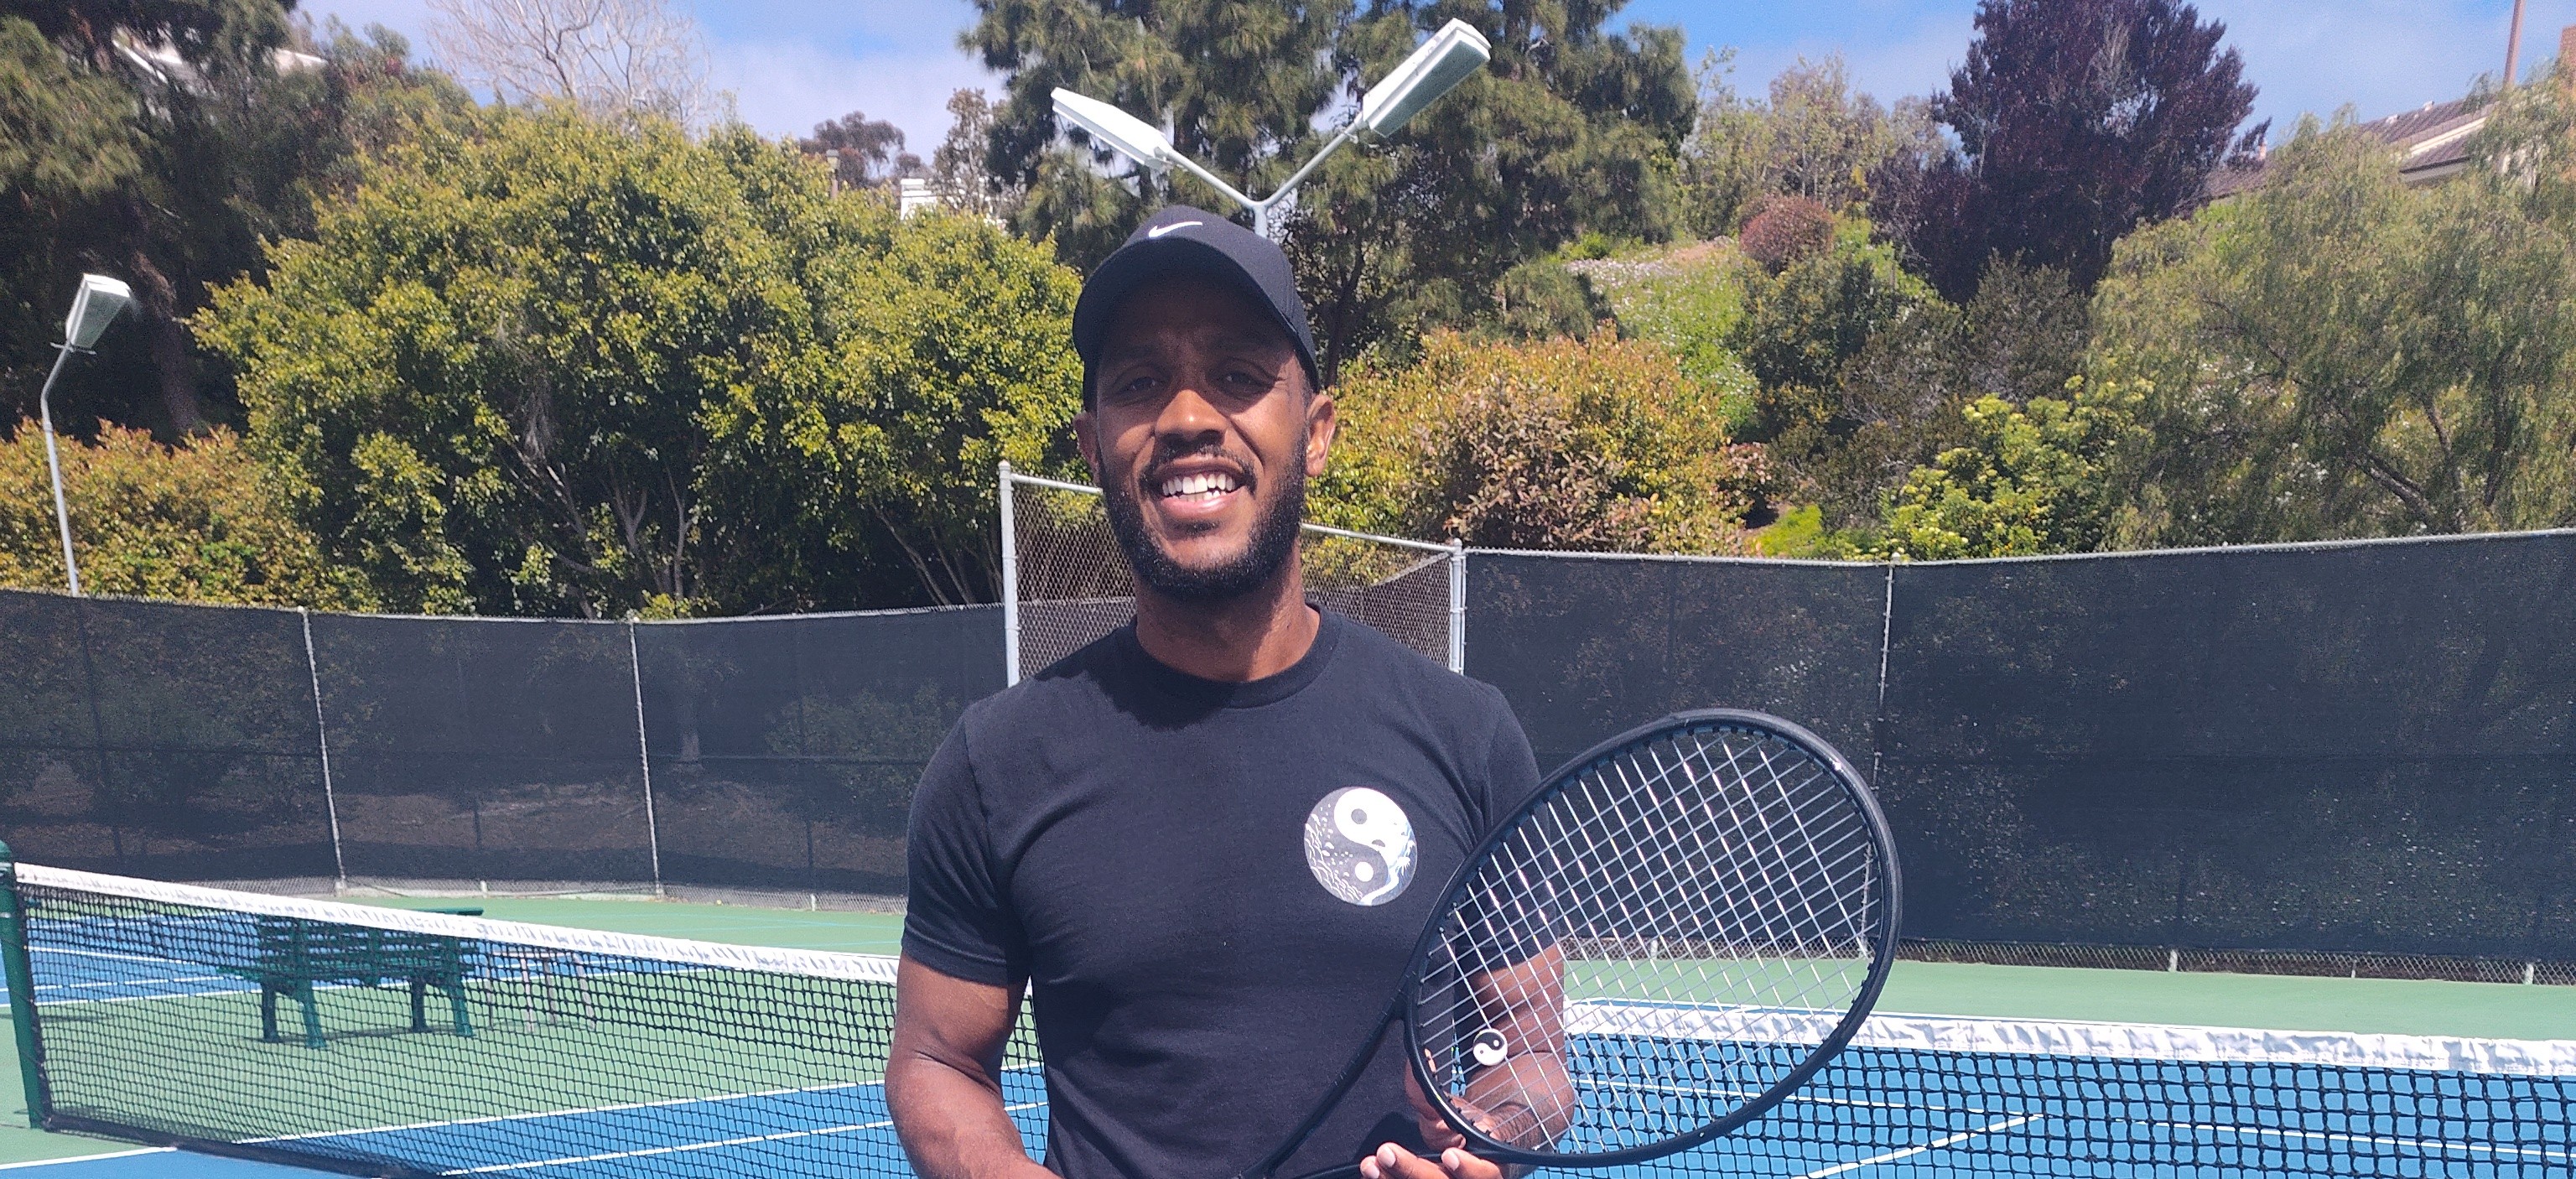 Steve P. teaches tennis lessons in San Ysidro, CA